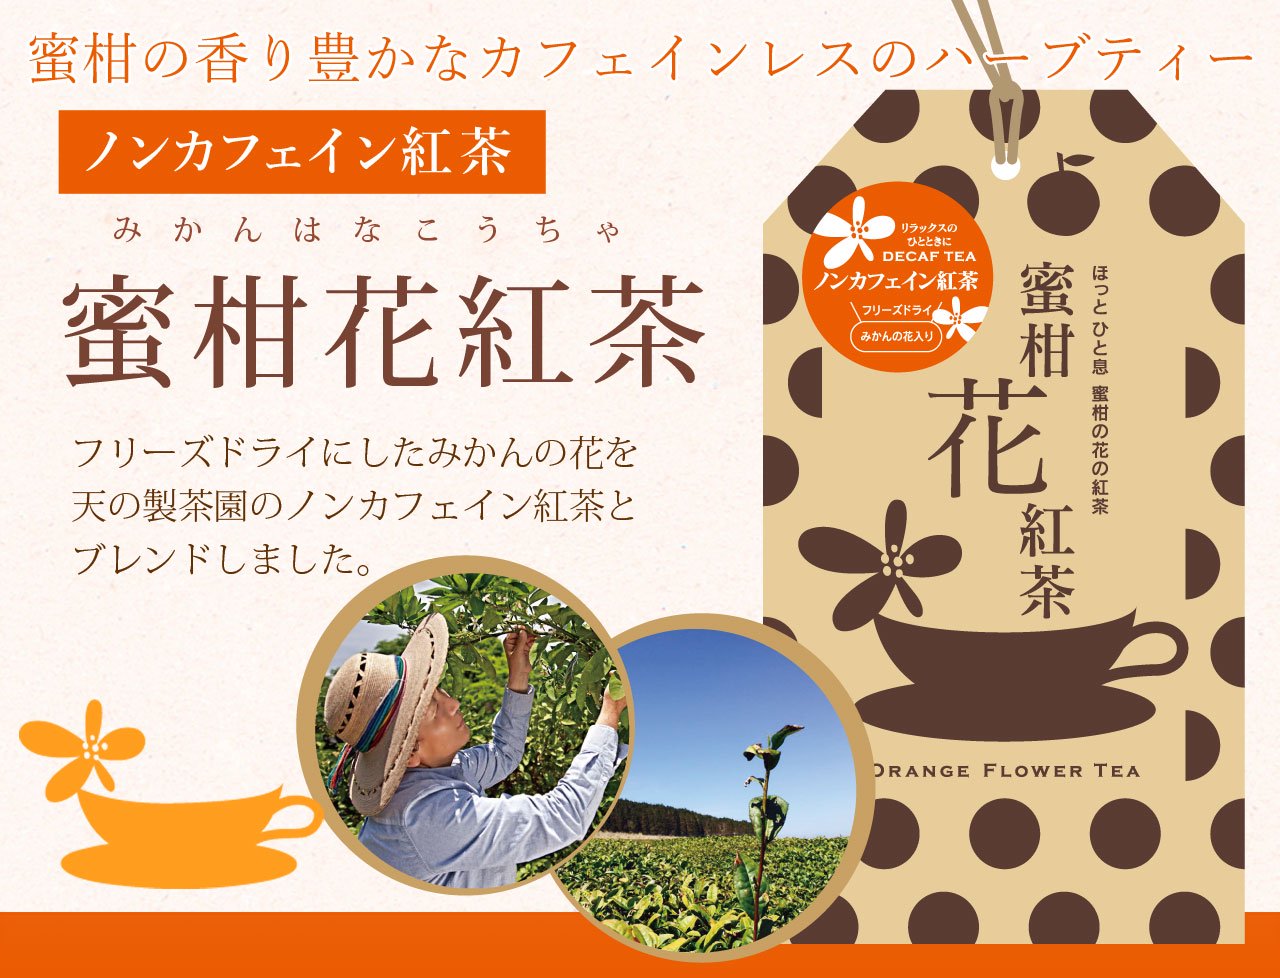 ノンカフェイン 蜜柑花紅茶 みかんの花の紅茶 フリーズドライ オレンジブロッサム 熊本河内の青みかん果汁や粉末など